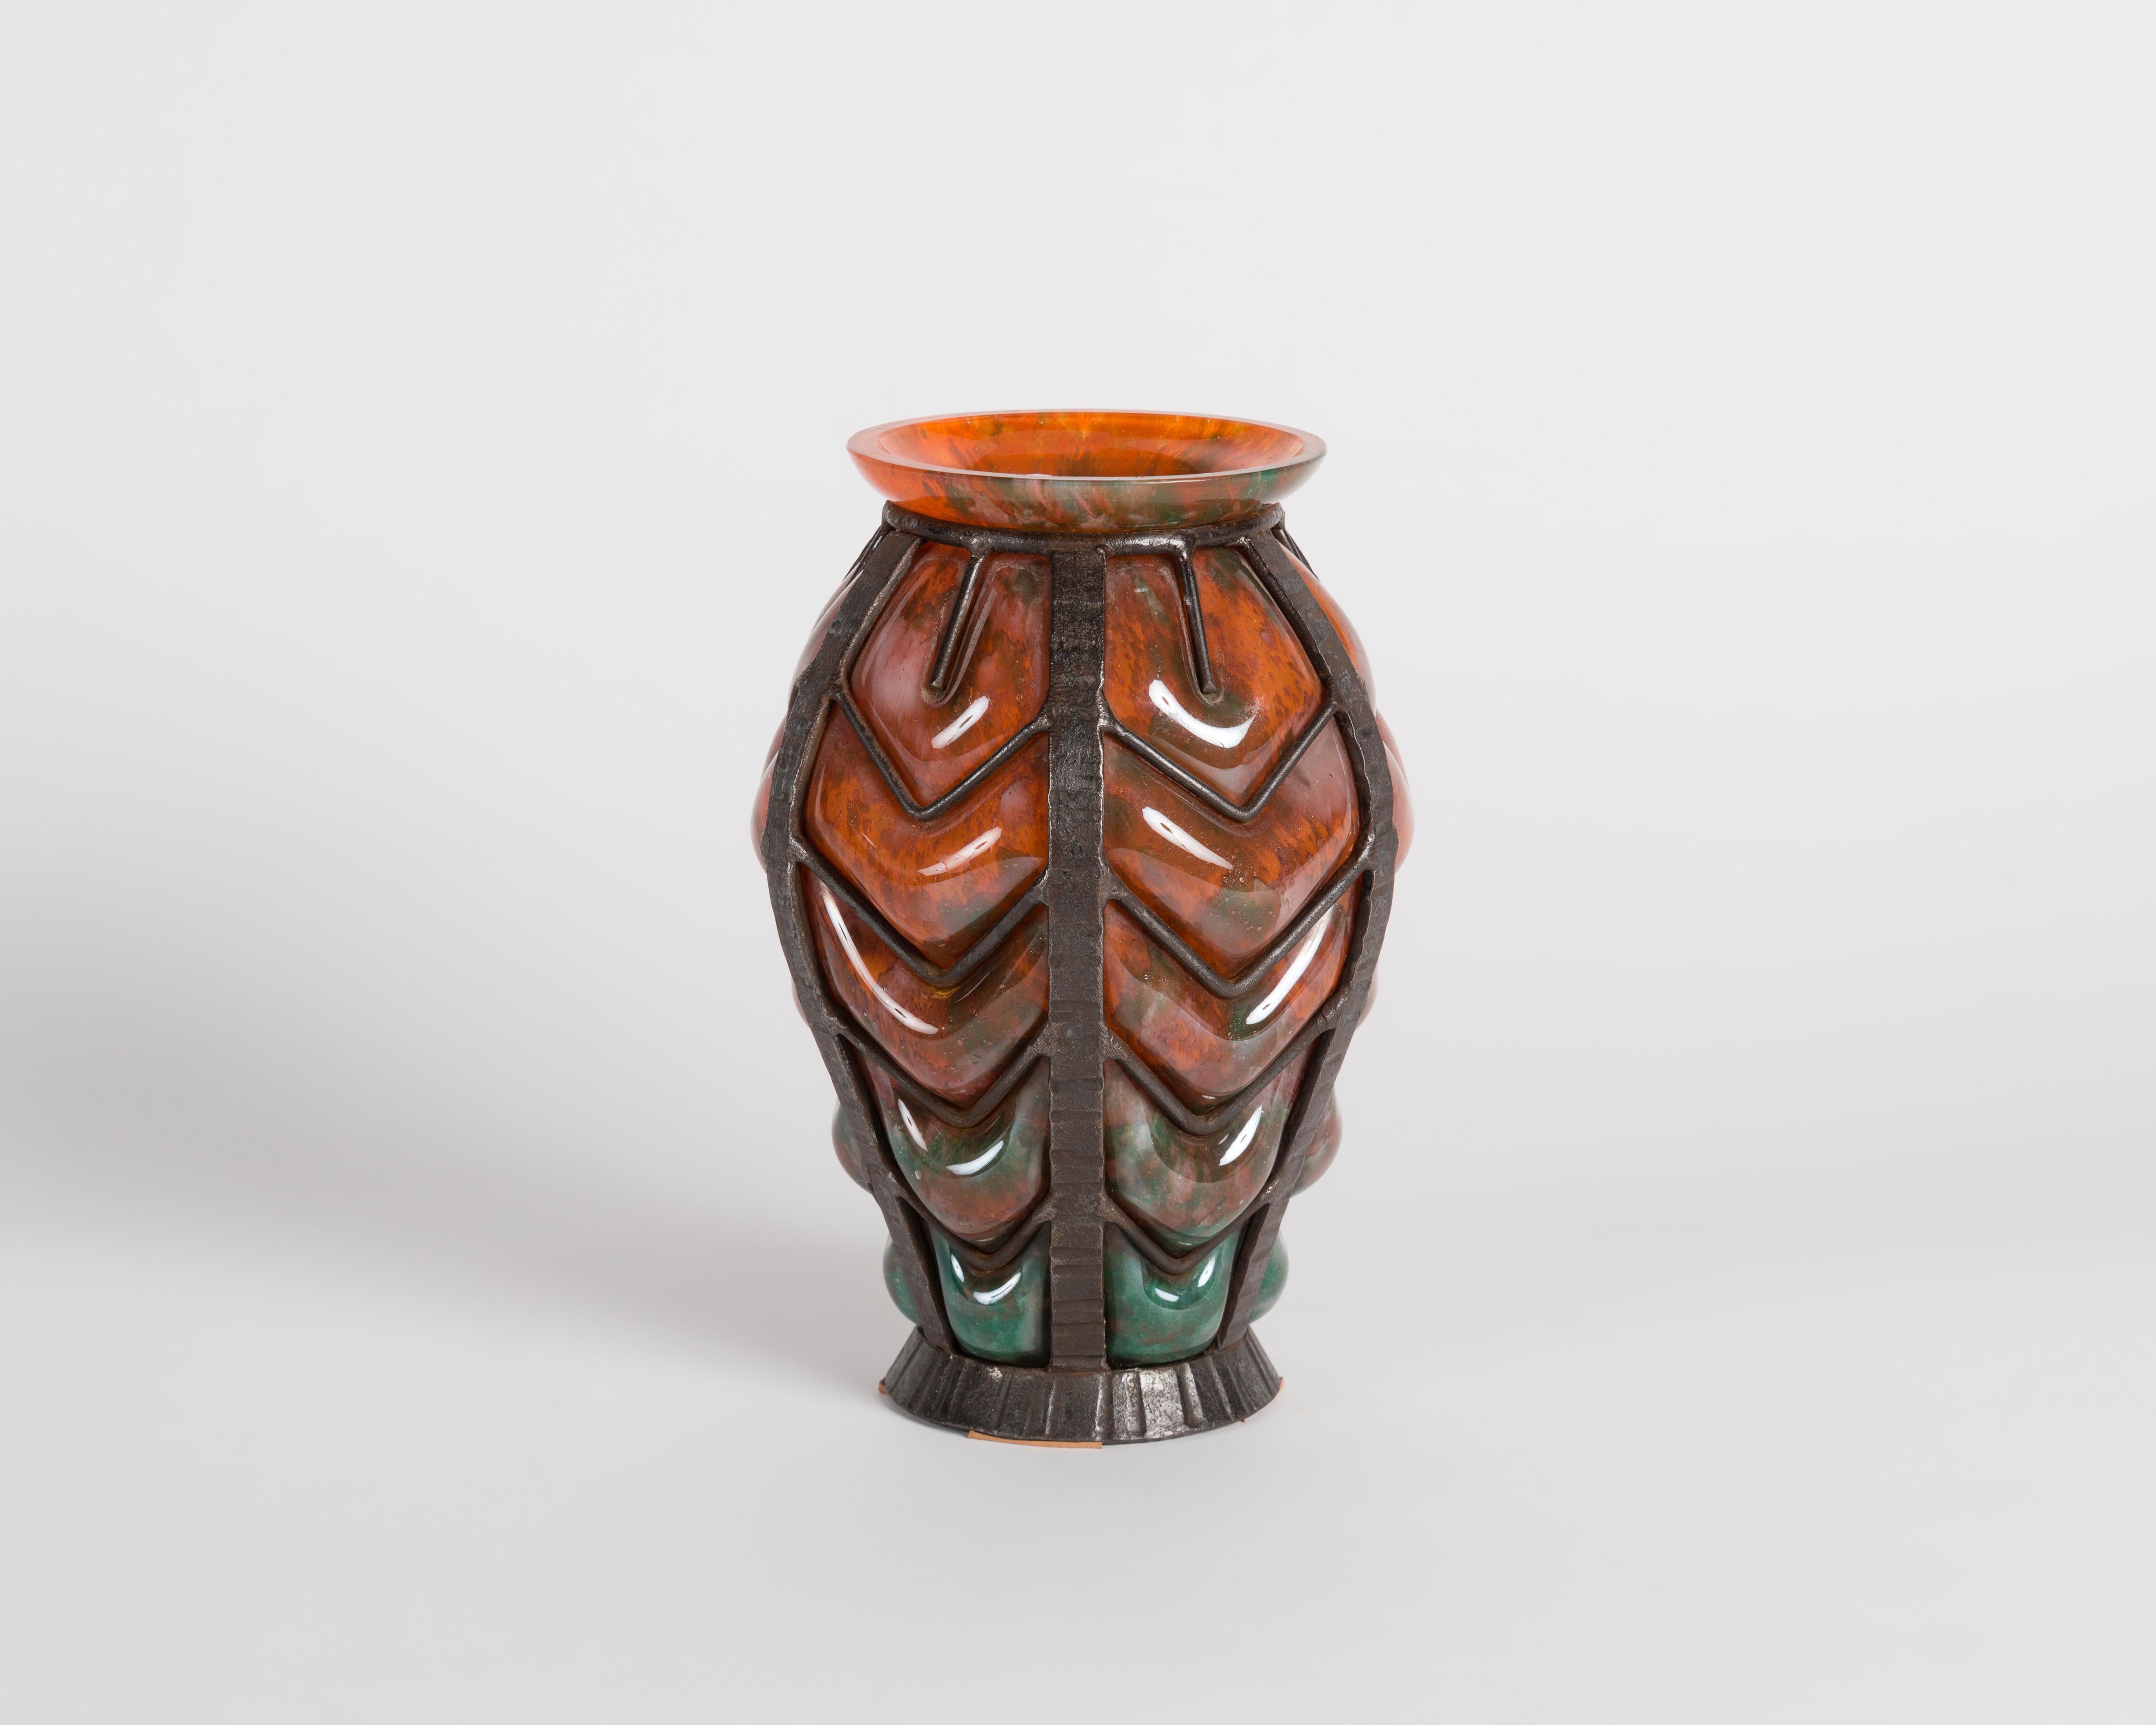 Diese Vase des frühen Deco, die Verreries D'Art Lorrain zugeschrieben wird, hat eine einzigartige orangefarbene Färbung und ist von einem kunstvoll gerippten Schmiedeeisen umhüllt.